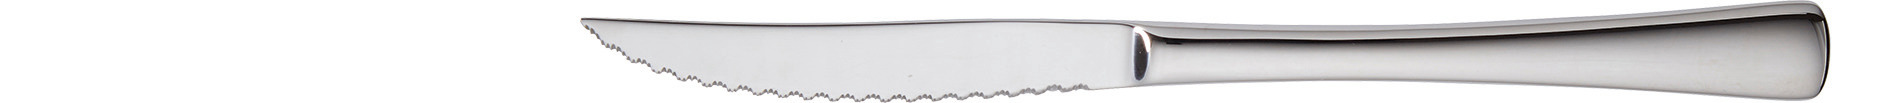 Steakmesser 218 mm mit Piranhaschliff